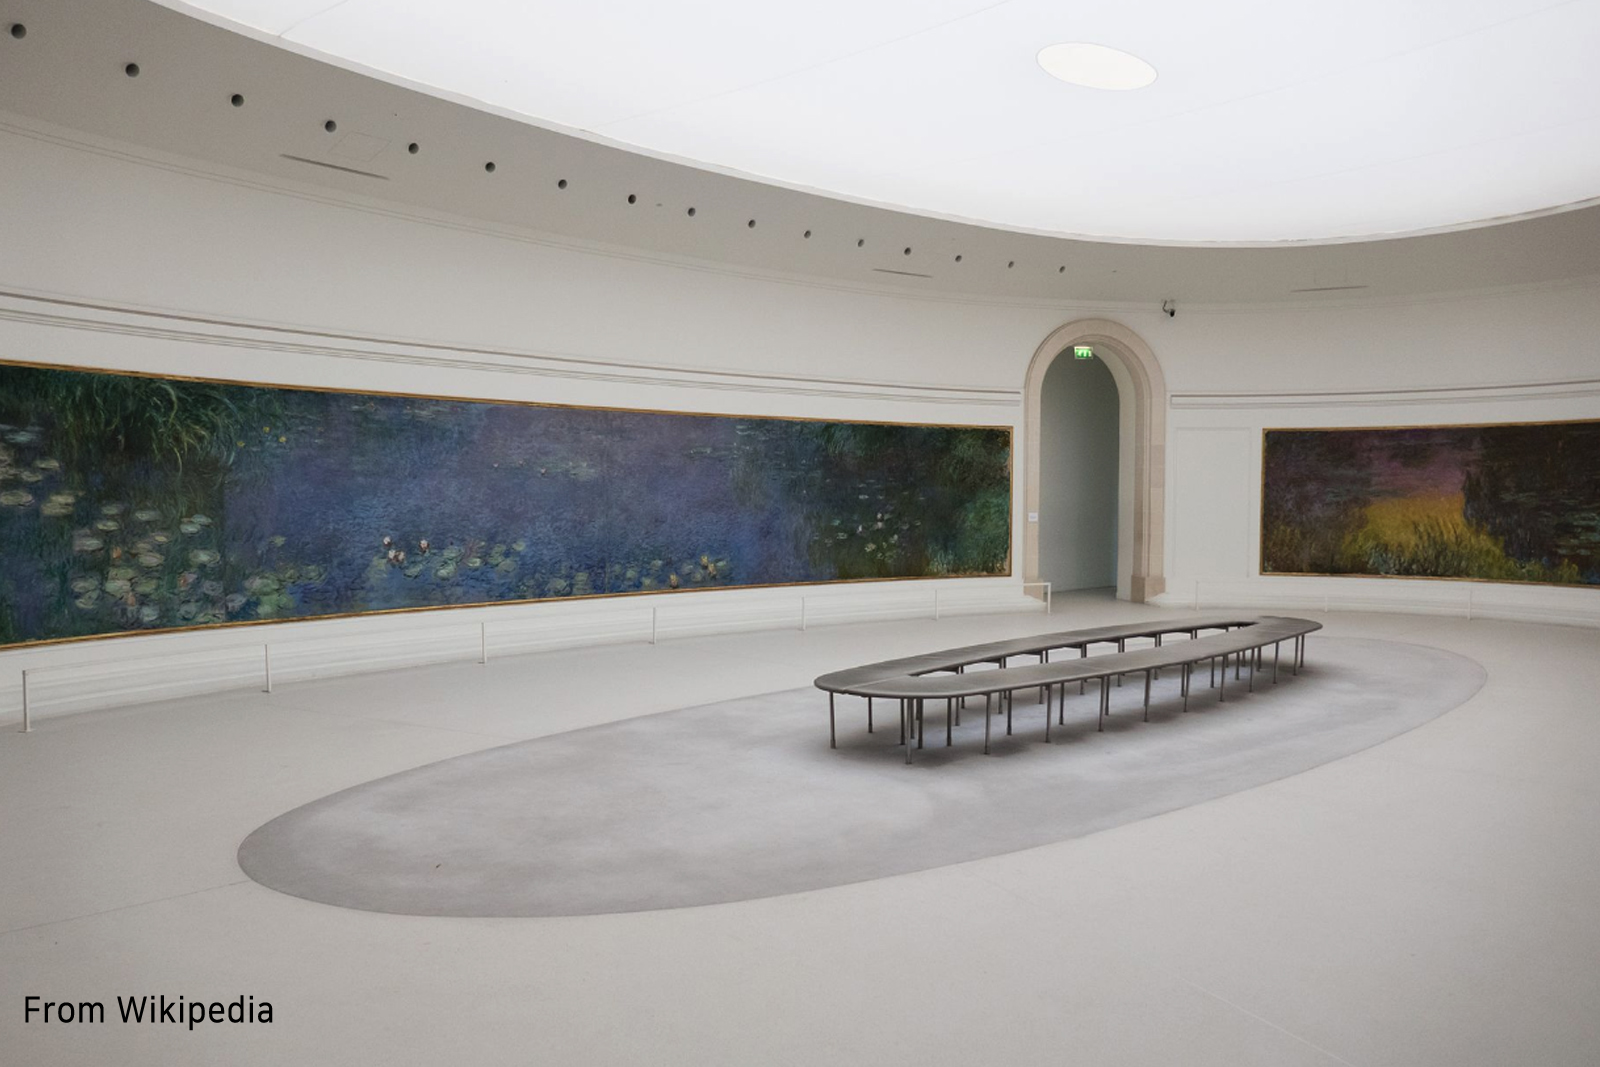 Claude Monet's Nymphéas